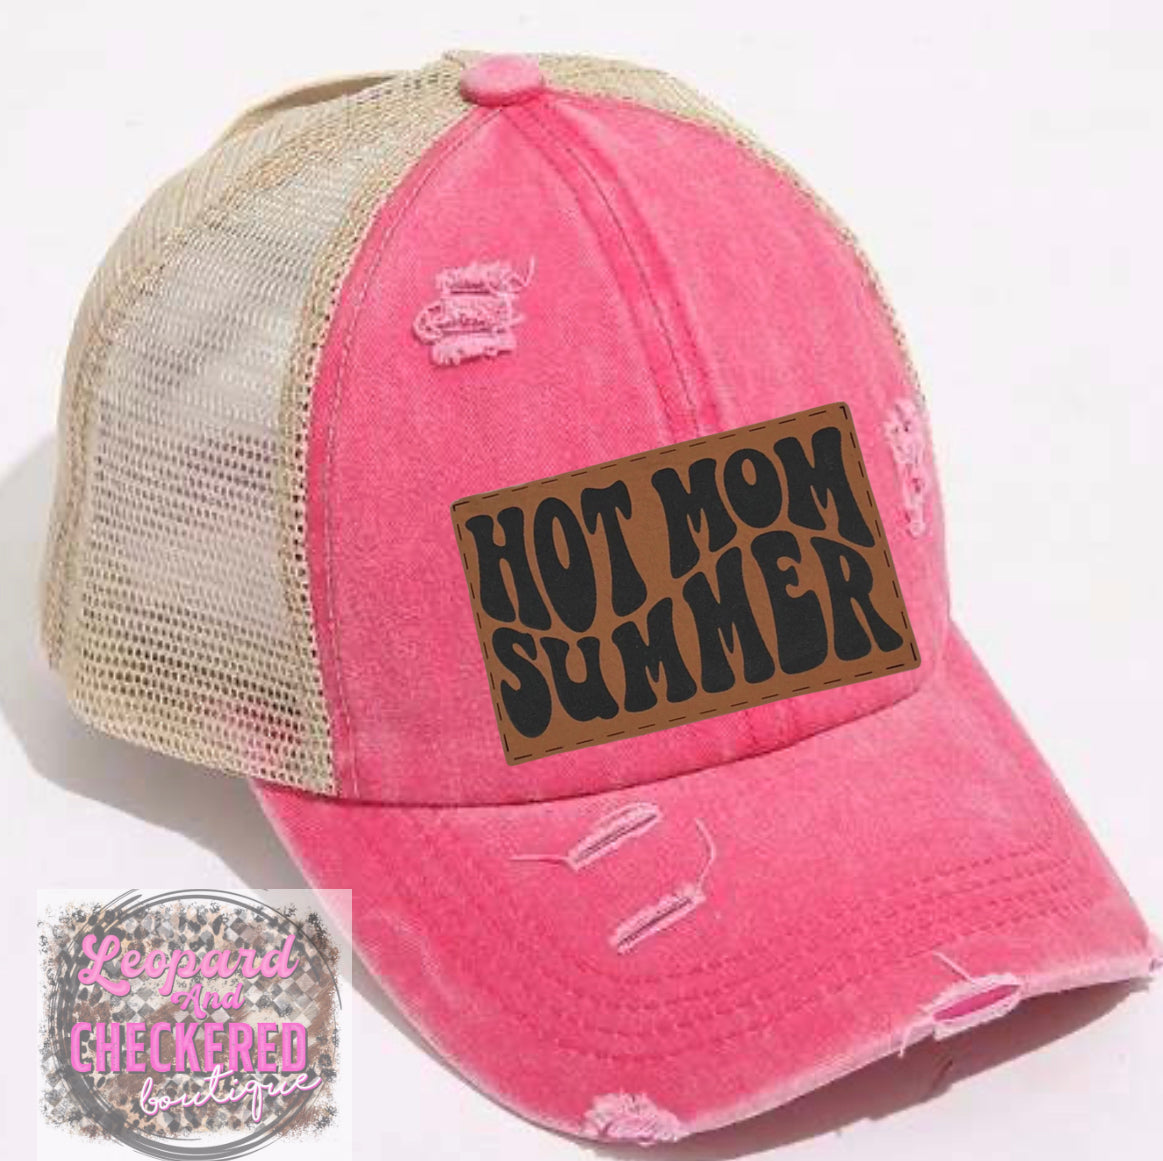 Hot Mom Summer Hat